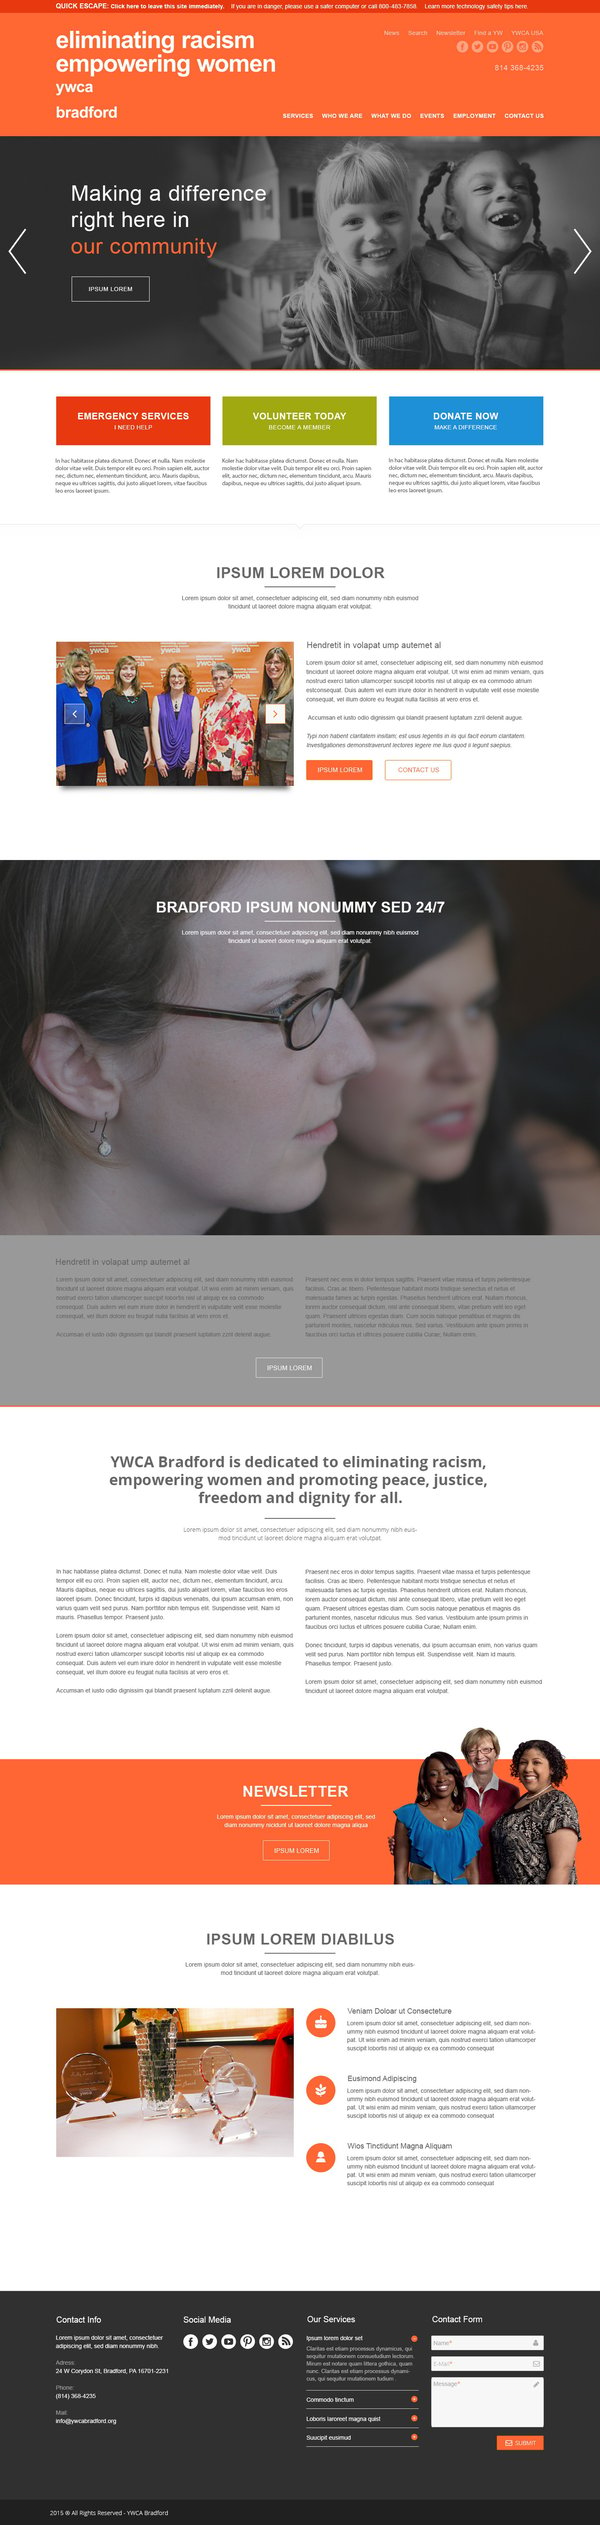 YWCA_Bradford_Website_homepage.jpg